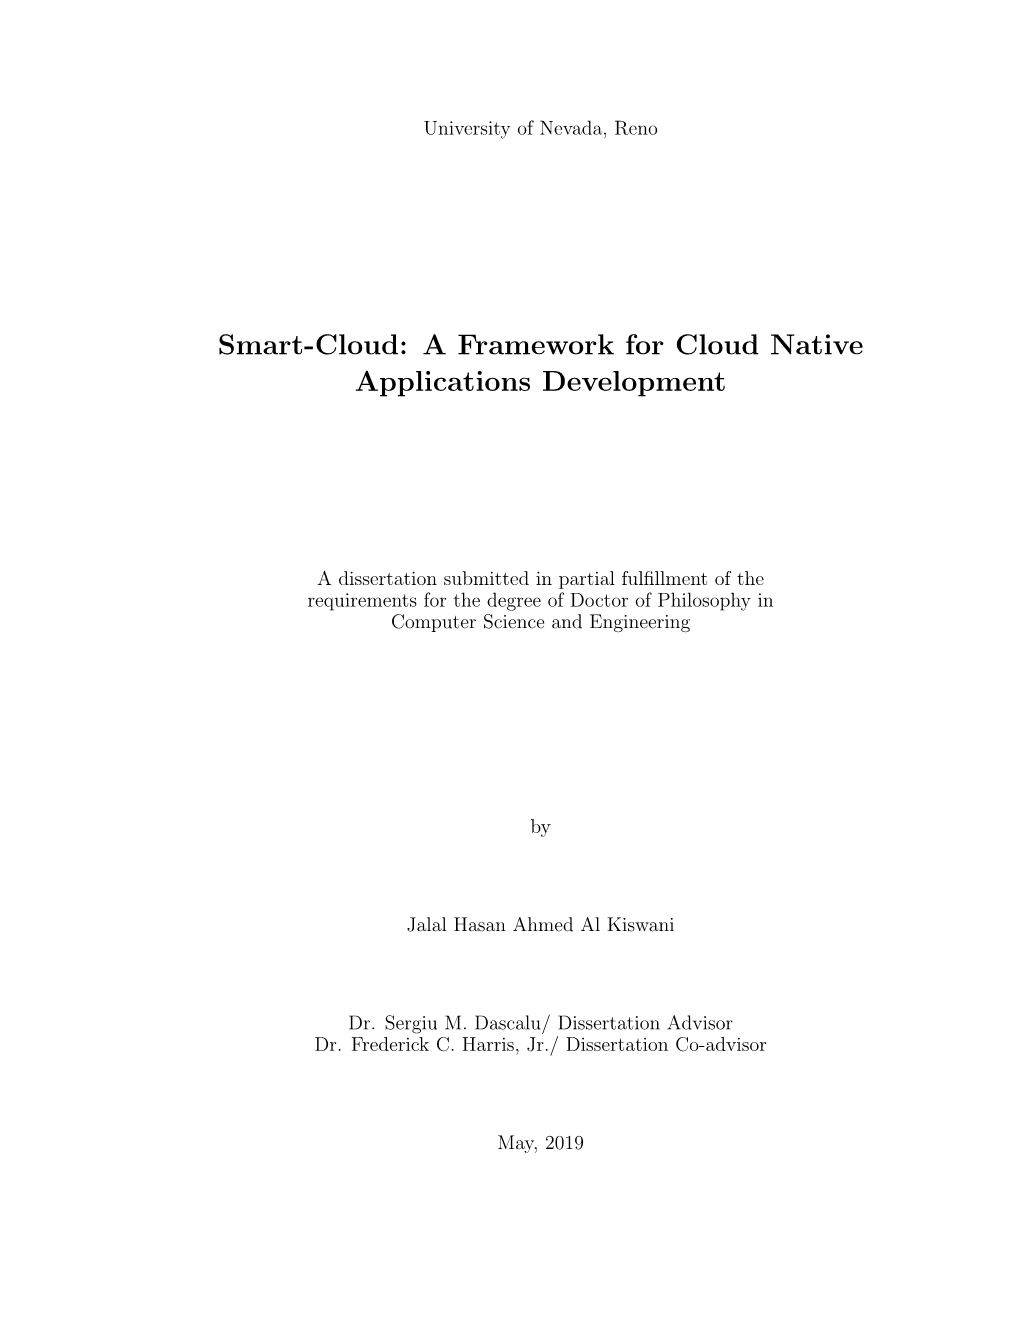 Smart-Cloud: a Framework for Cloud Native Applications Development